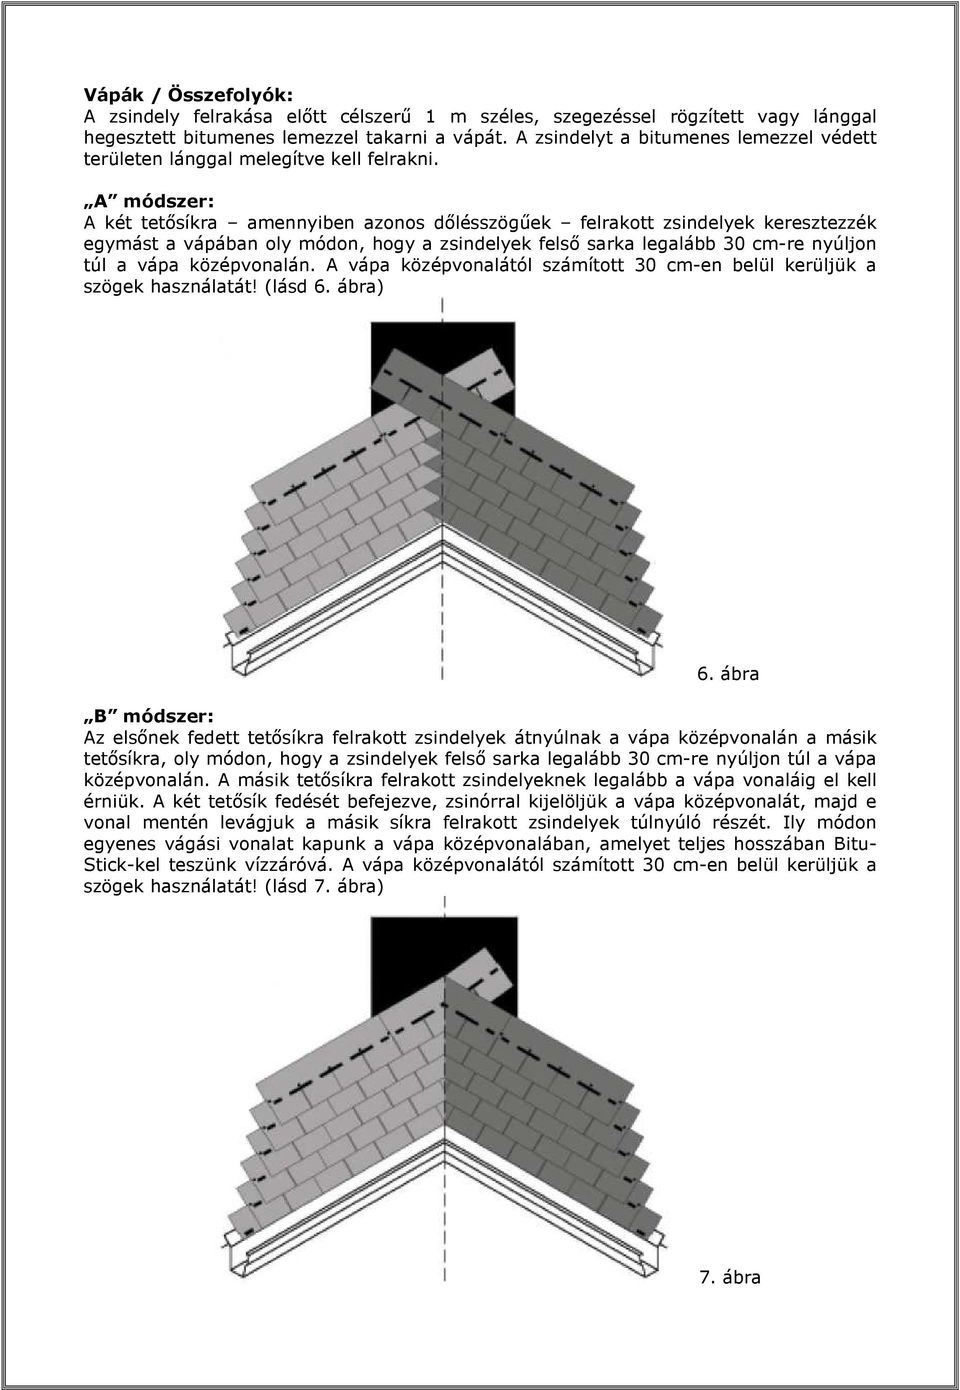 A módszer: A két tetősíkra amennyiben azonos dőlésszögűek felrakott zsindelyek keresztezzék egymást a vápában oly módon, hogy a zsindelyek felső sarka legalább 30 cm-re nyúljon túl a vápa